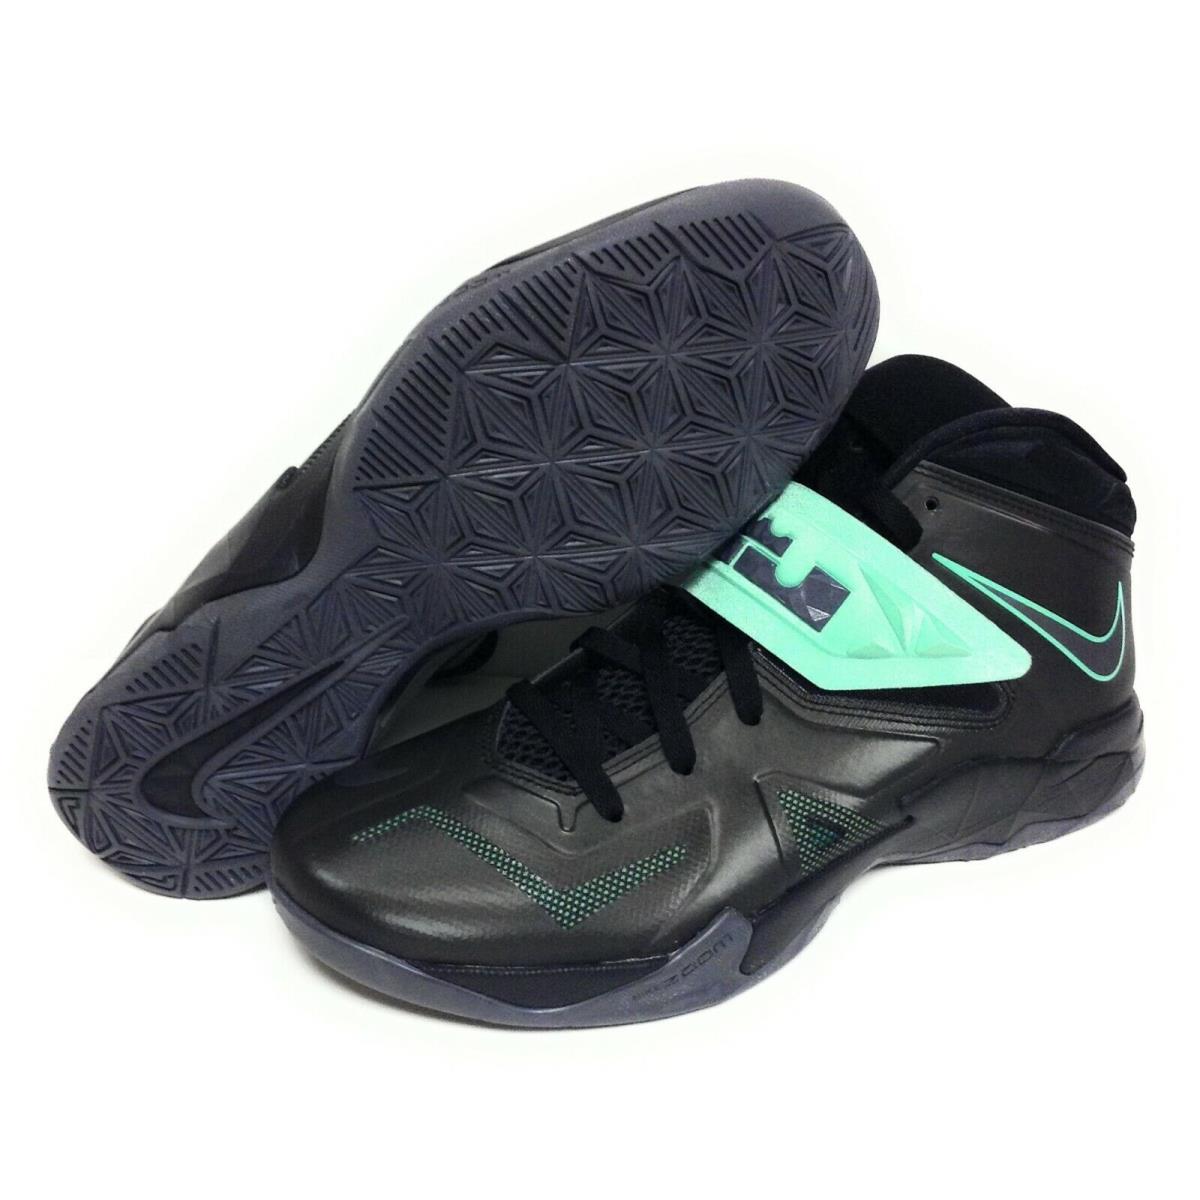 Mens Nike Lebron Zoom Soldier Vii 599264 002 Black Green Glow Sneakers Shoes - Black